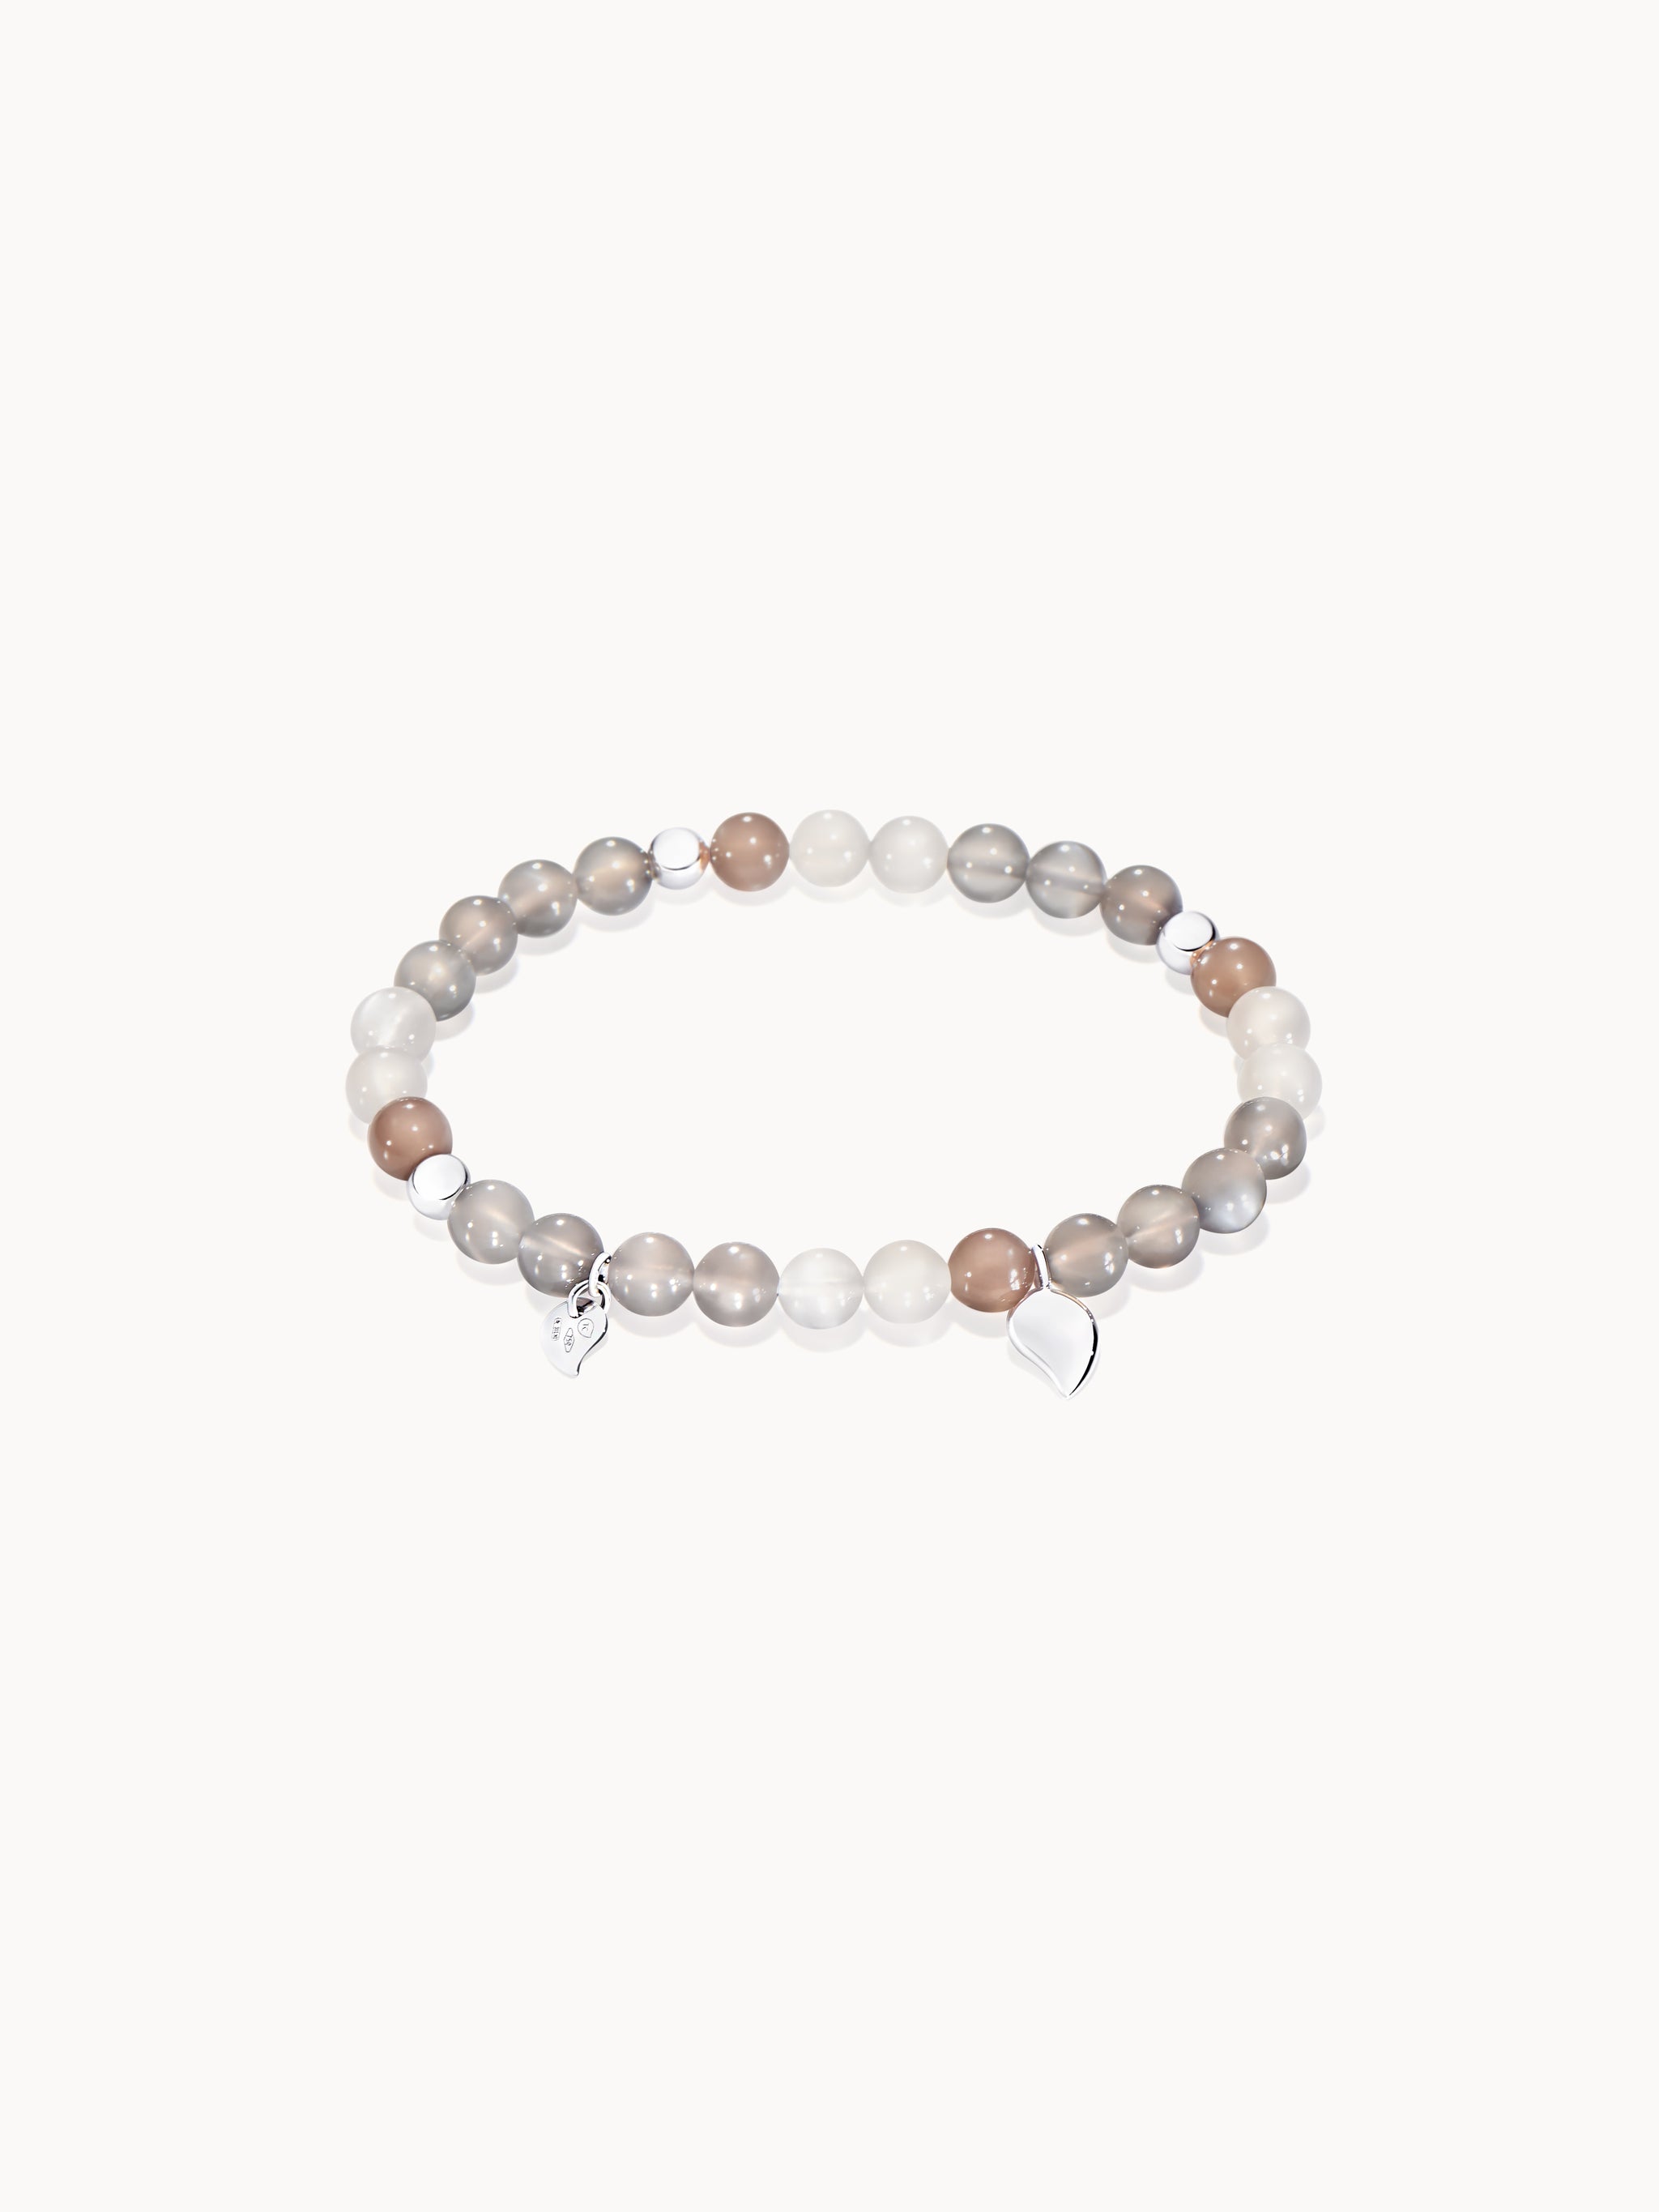 Rose Quartz and Rudraksha Seed Bracelet, Meditation Bracelet, Crystal —  Vastustoreonline